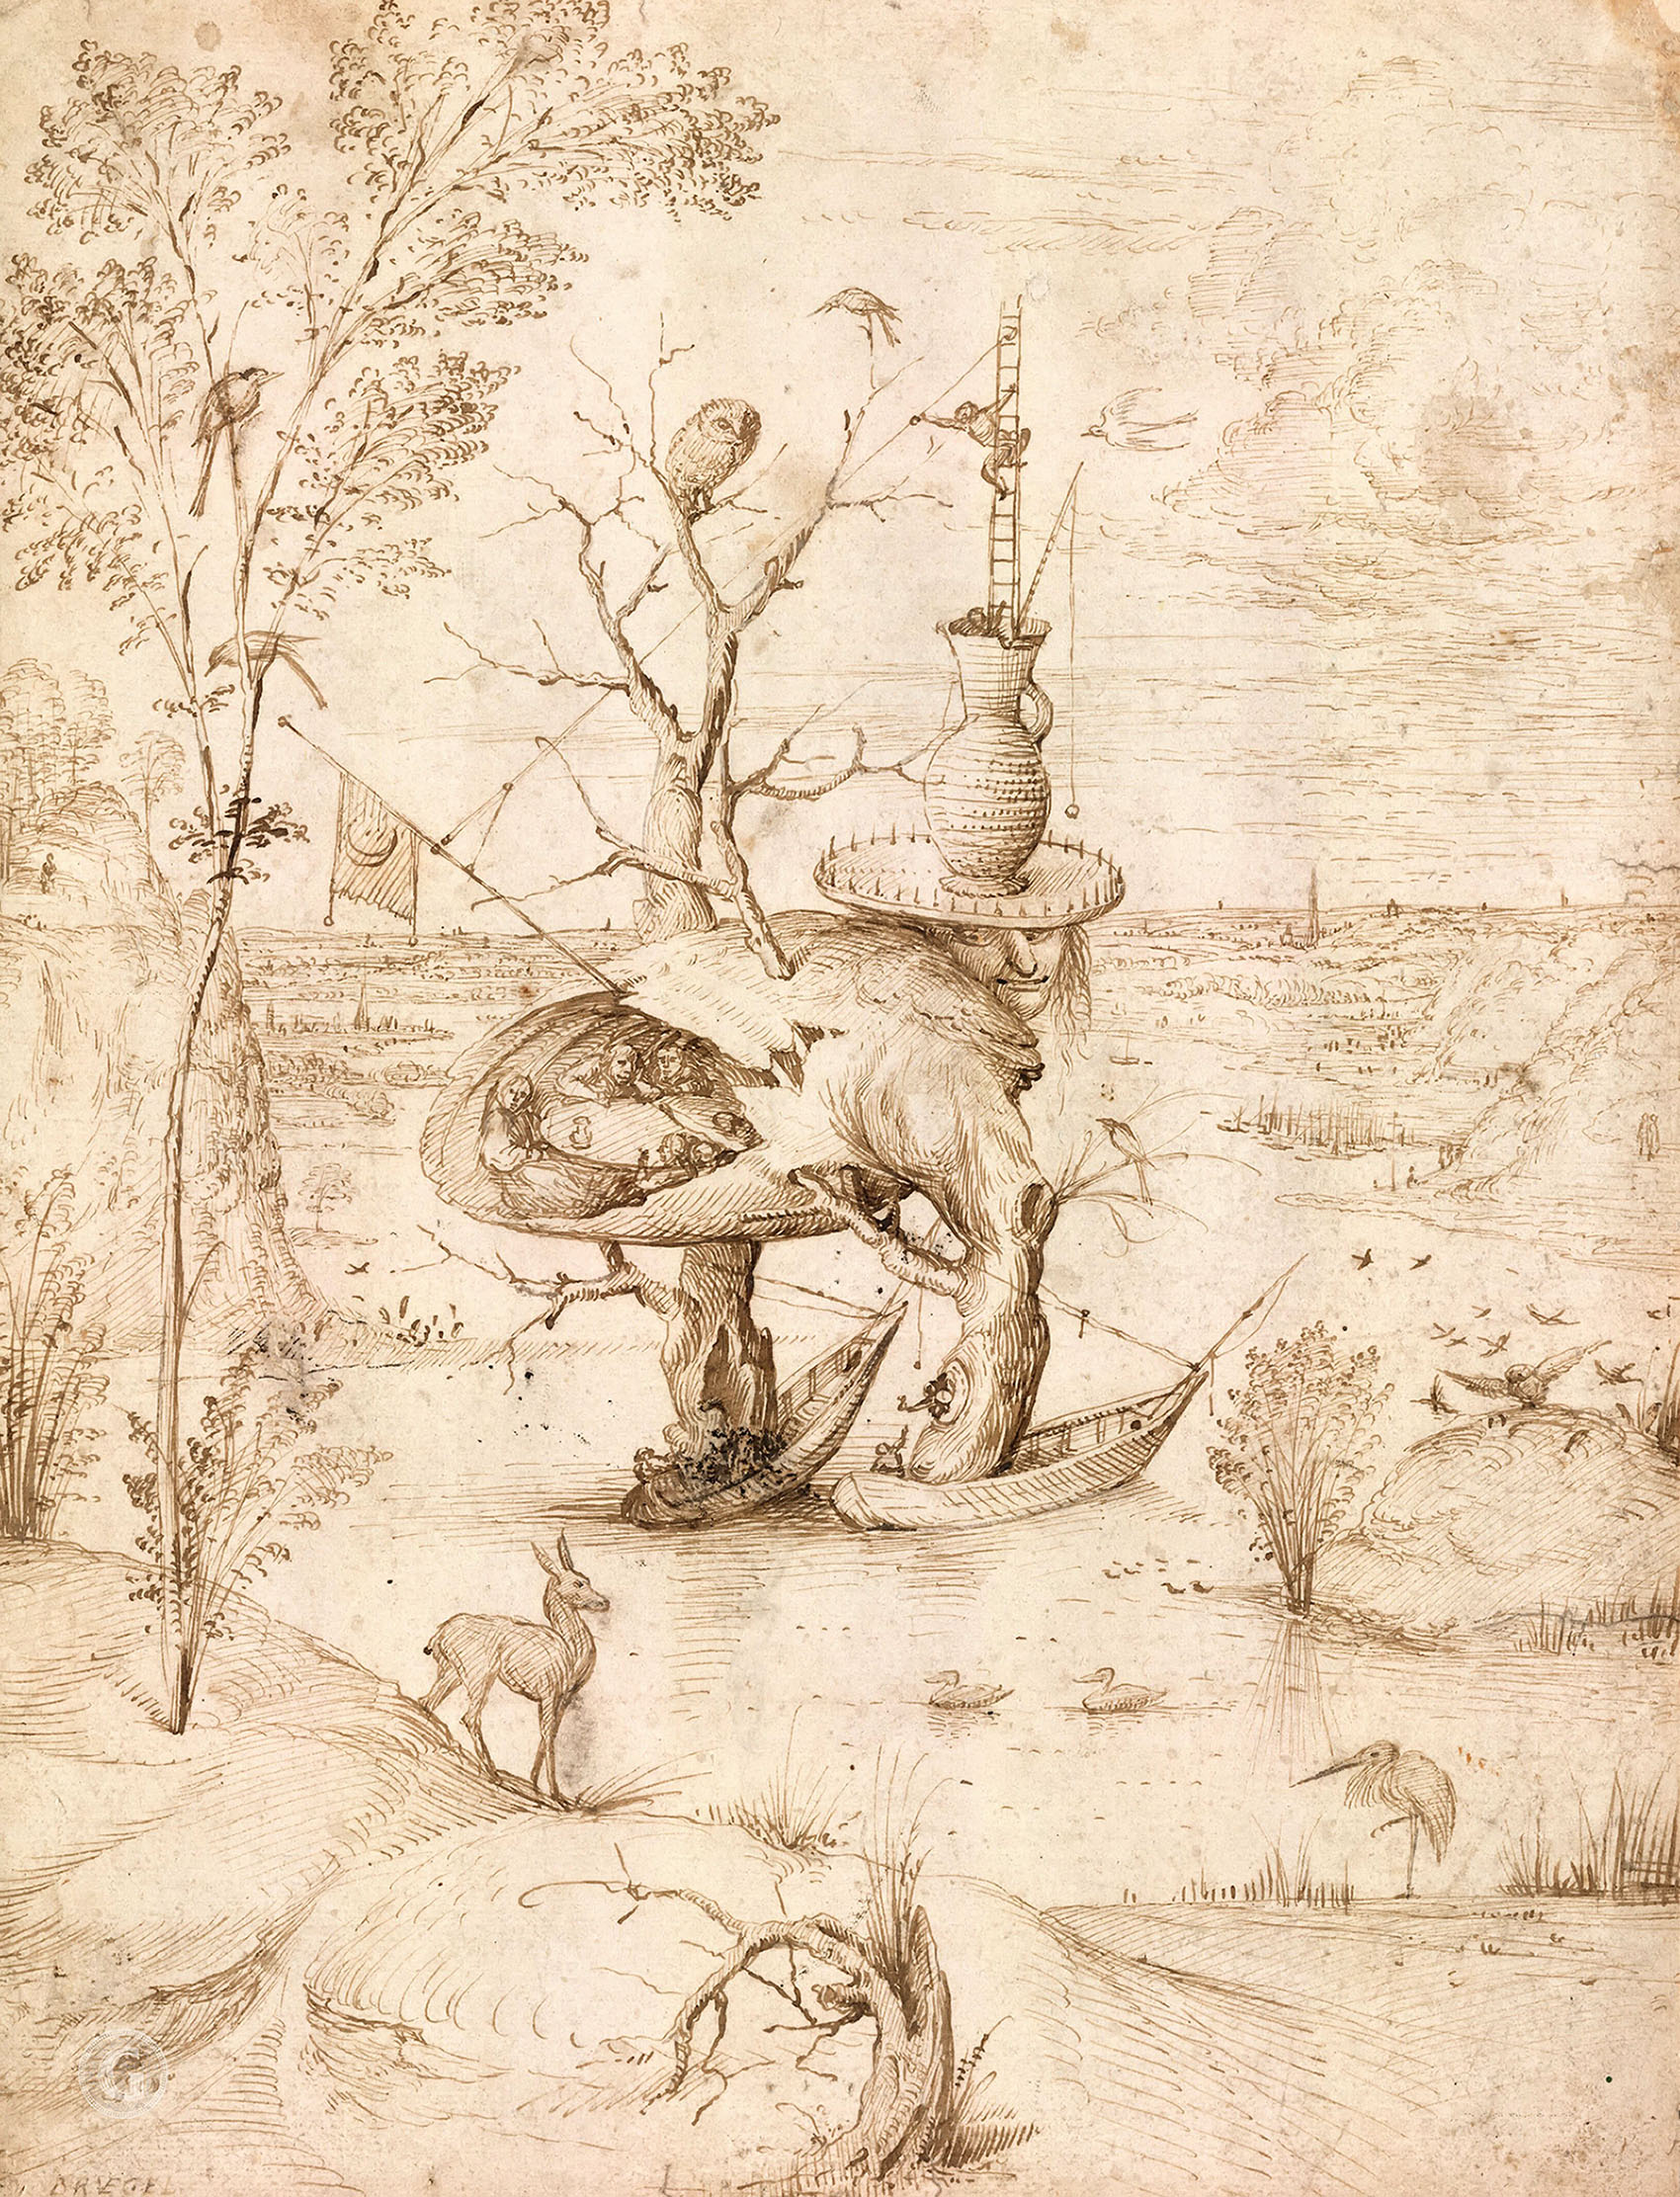 Иероним Босх. "Человек-дерево". 1500. Музей графического искусства Альбертина, Вена.